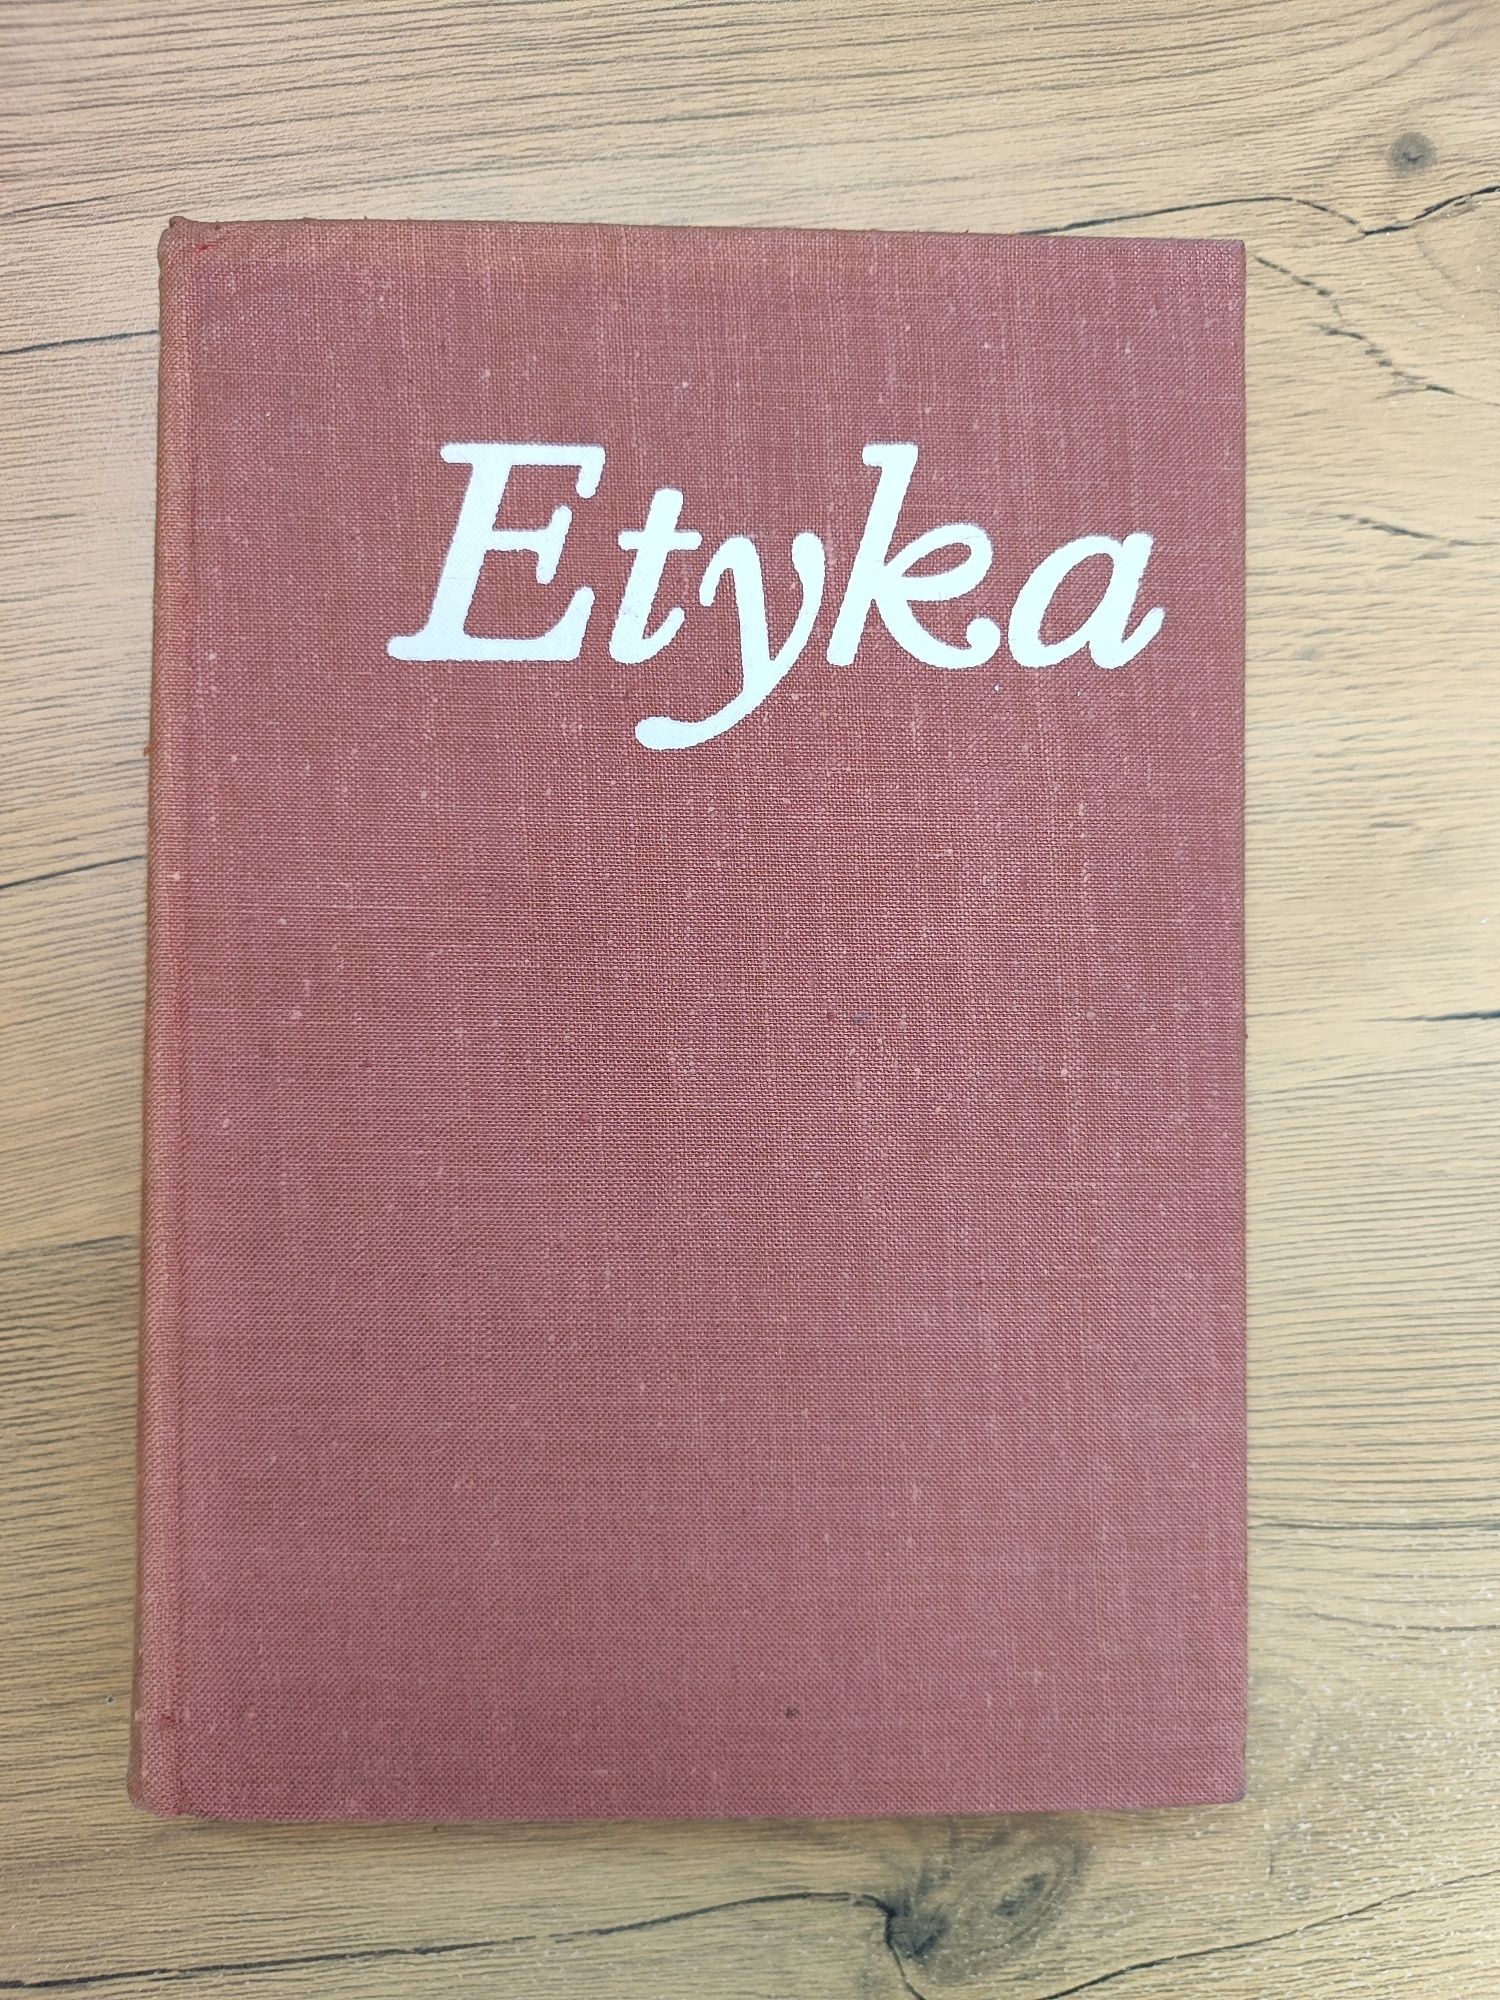 Okazja! Książka " Etyka " Red. Henryk Jankowski 1973